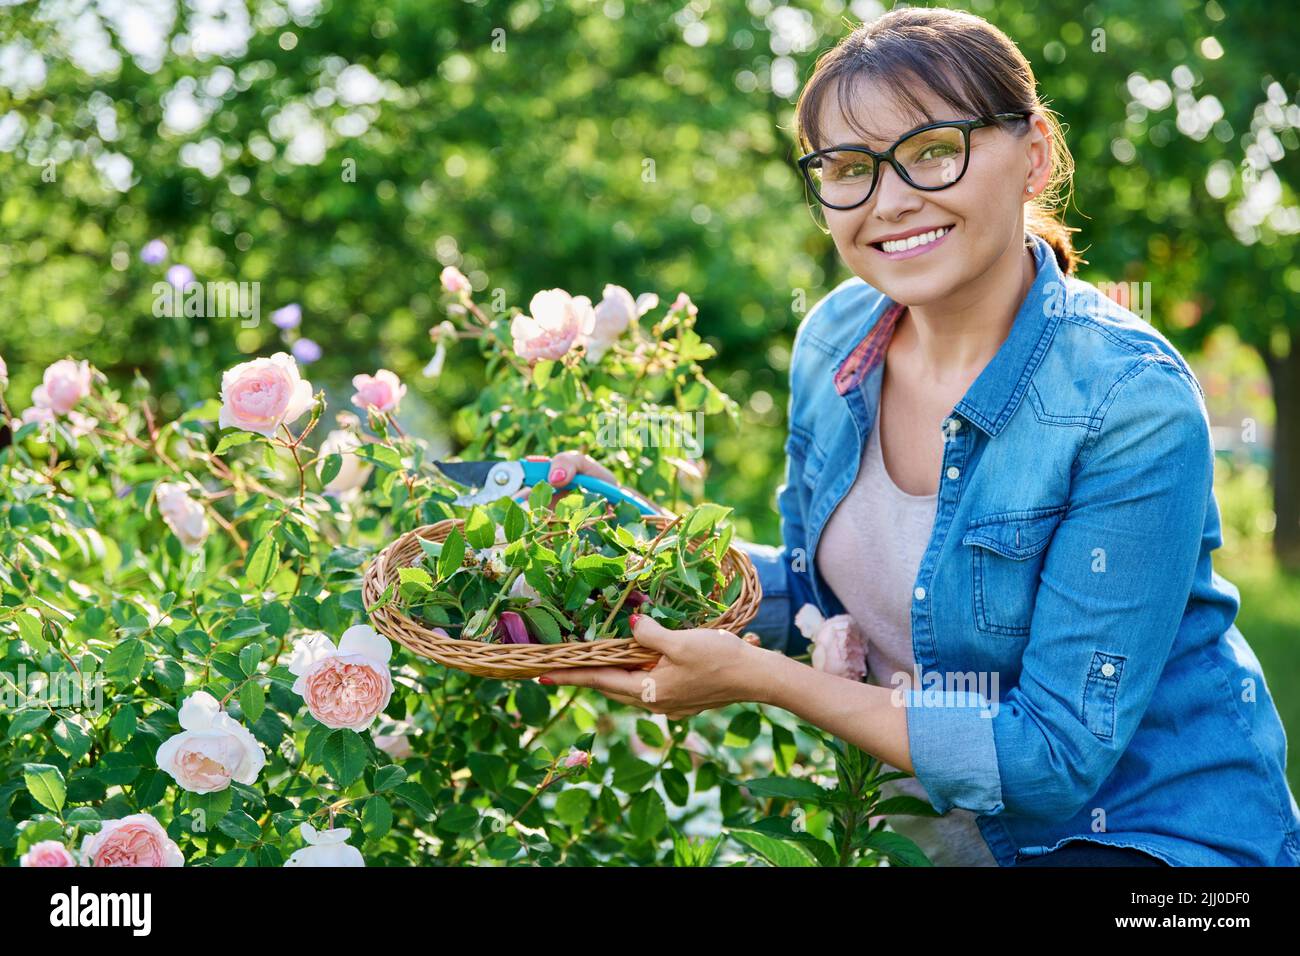 La femme s'occupe de la roseraie dans le jardin fleuri, en enlevant les fleurs sèches décolorées Banque D'Images